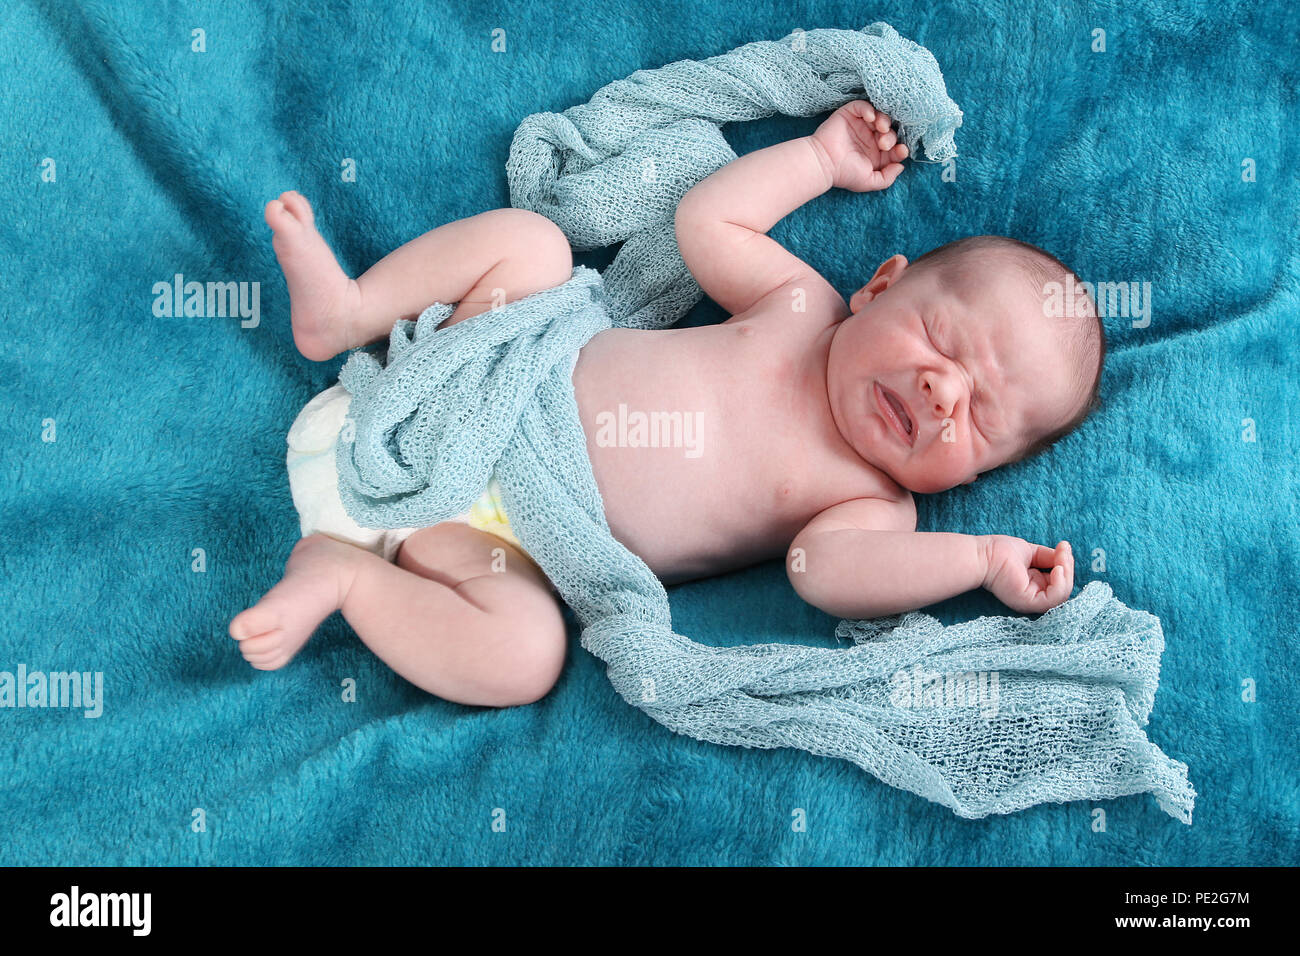 Addolorato baby, depressione postnatale Foto Stock